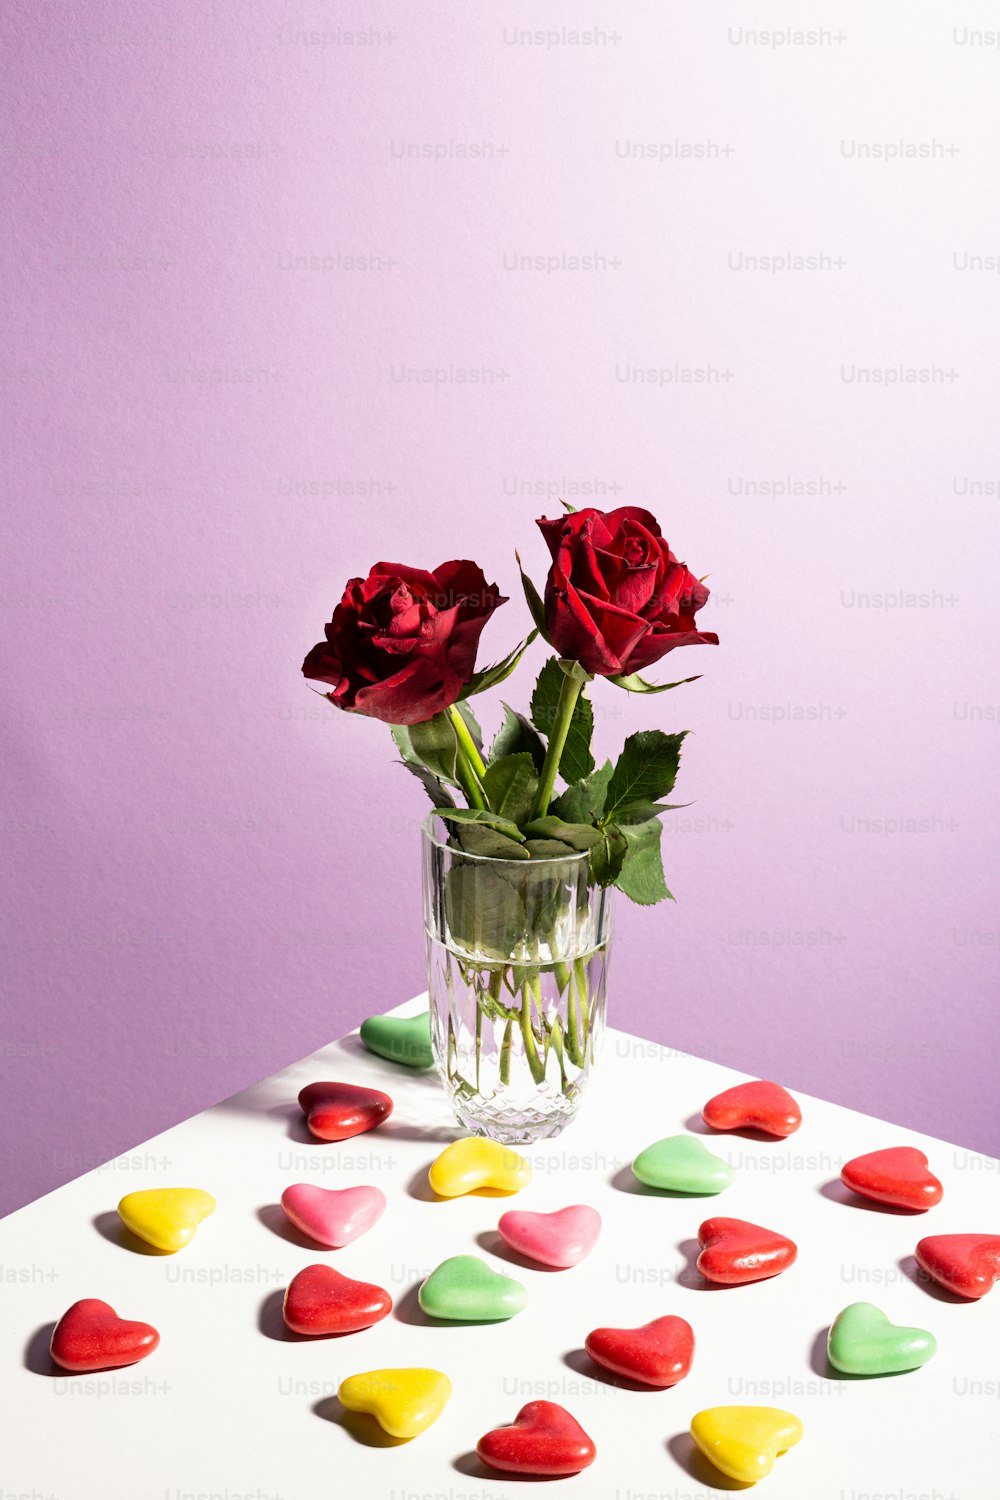 テーブルの上に置かれた赤いバラでいっぱいの花瓶